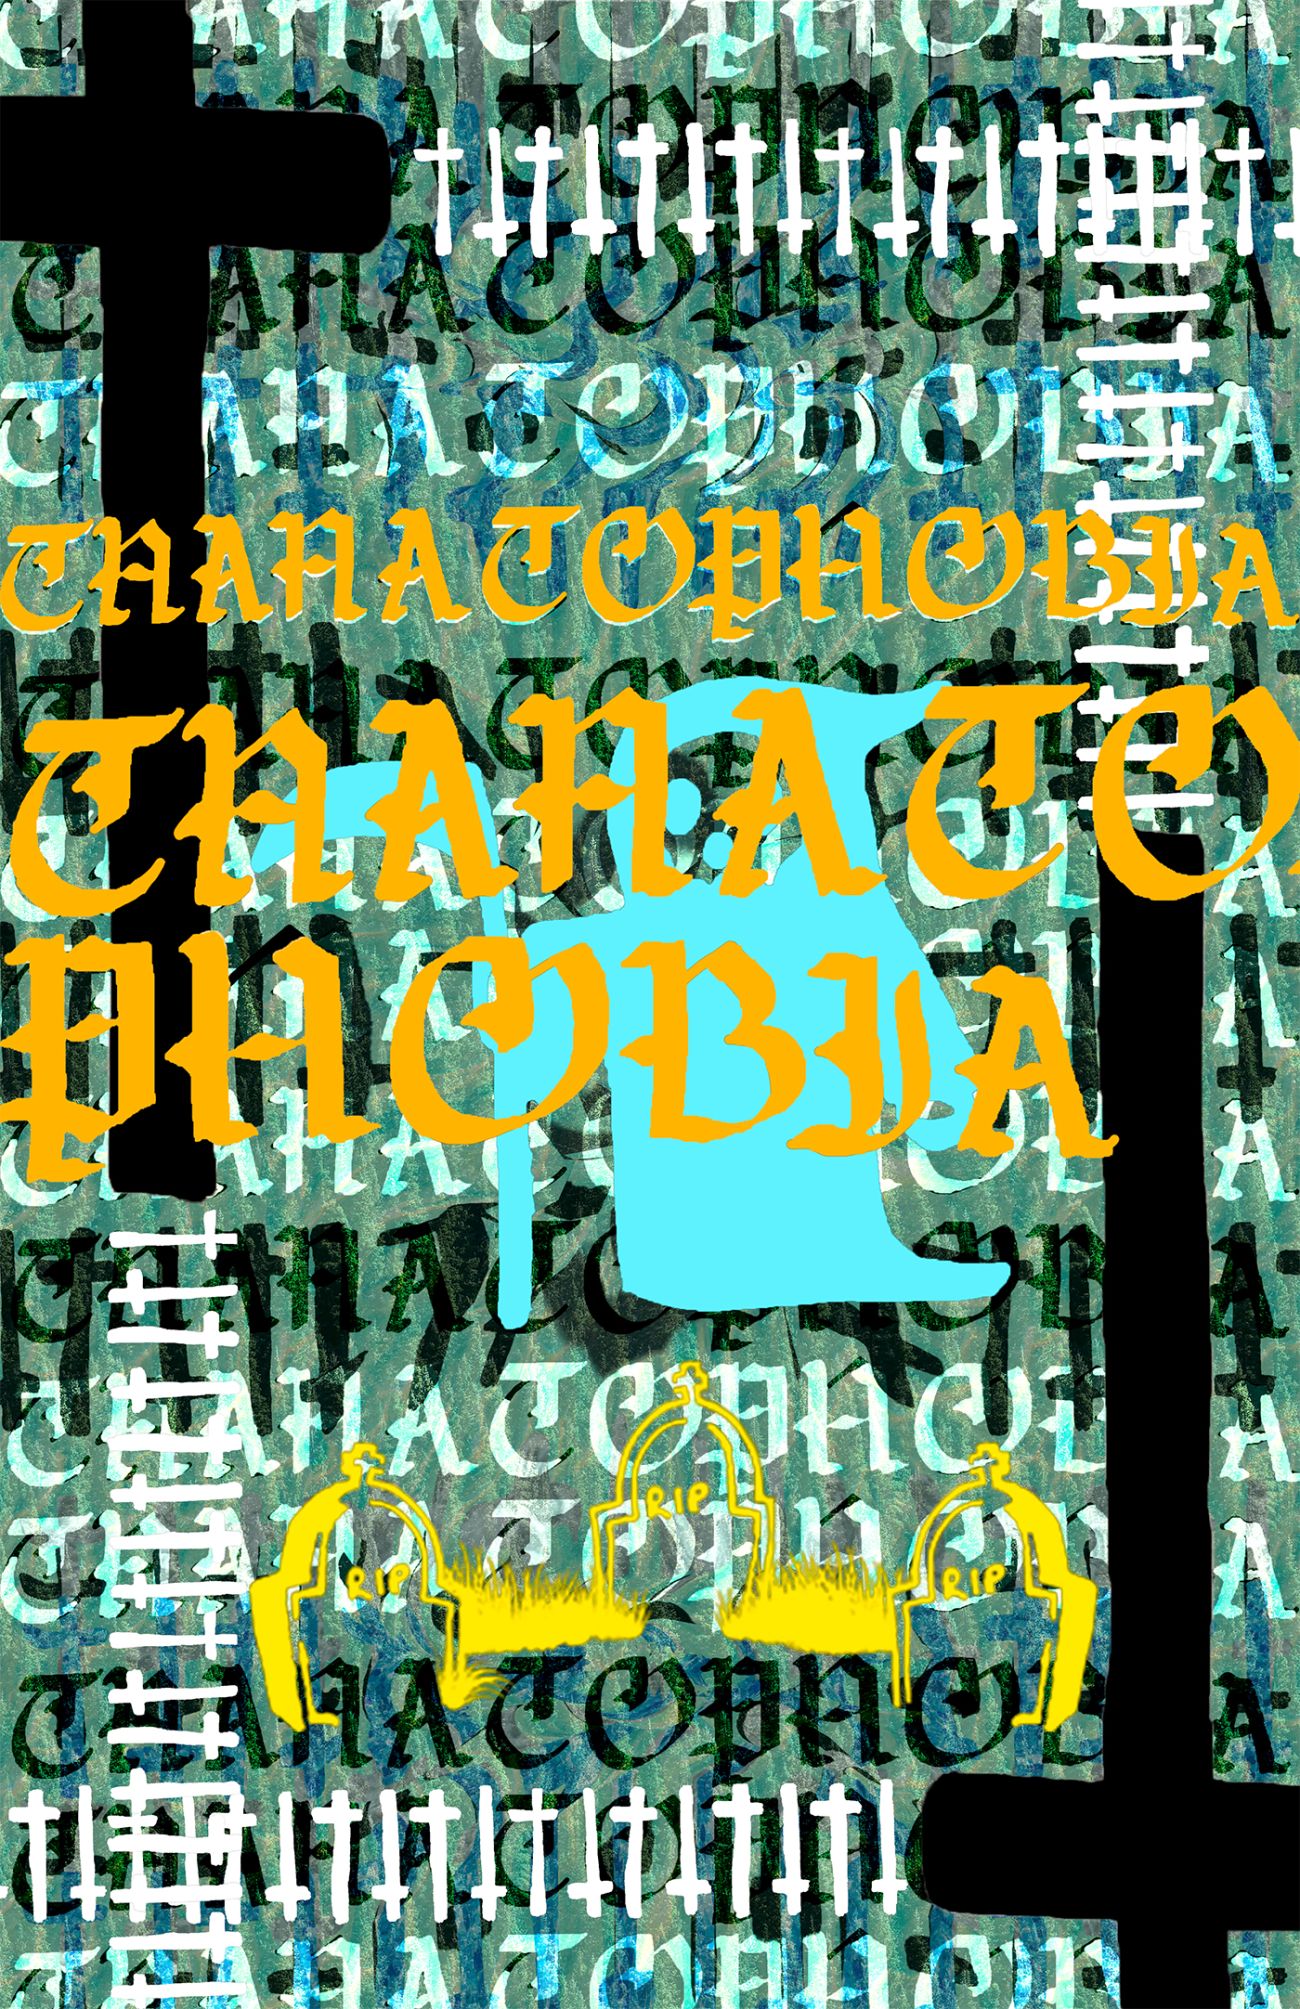 Megan Gallagher, Thanatophobia collage, 2020, Digital ©Megan Gallagher